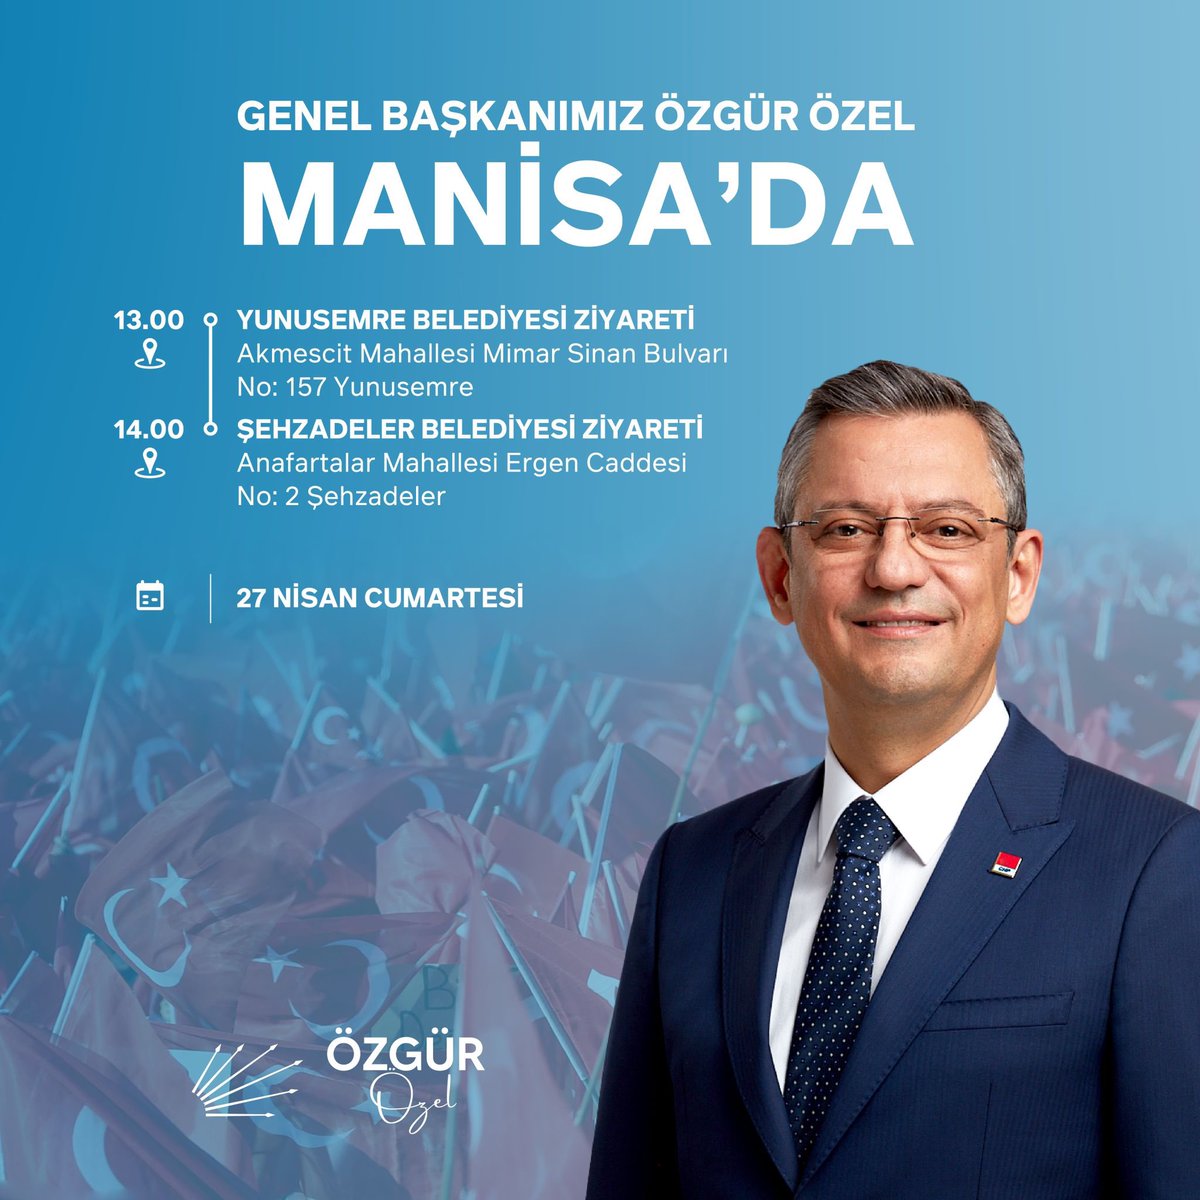 Genel Başkanımız Sayın Özgür Özel, yarın Manisa’da olacak. 🗓️27 Nisan Cumartesi